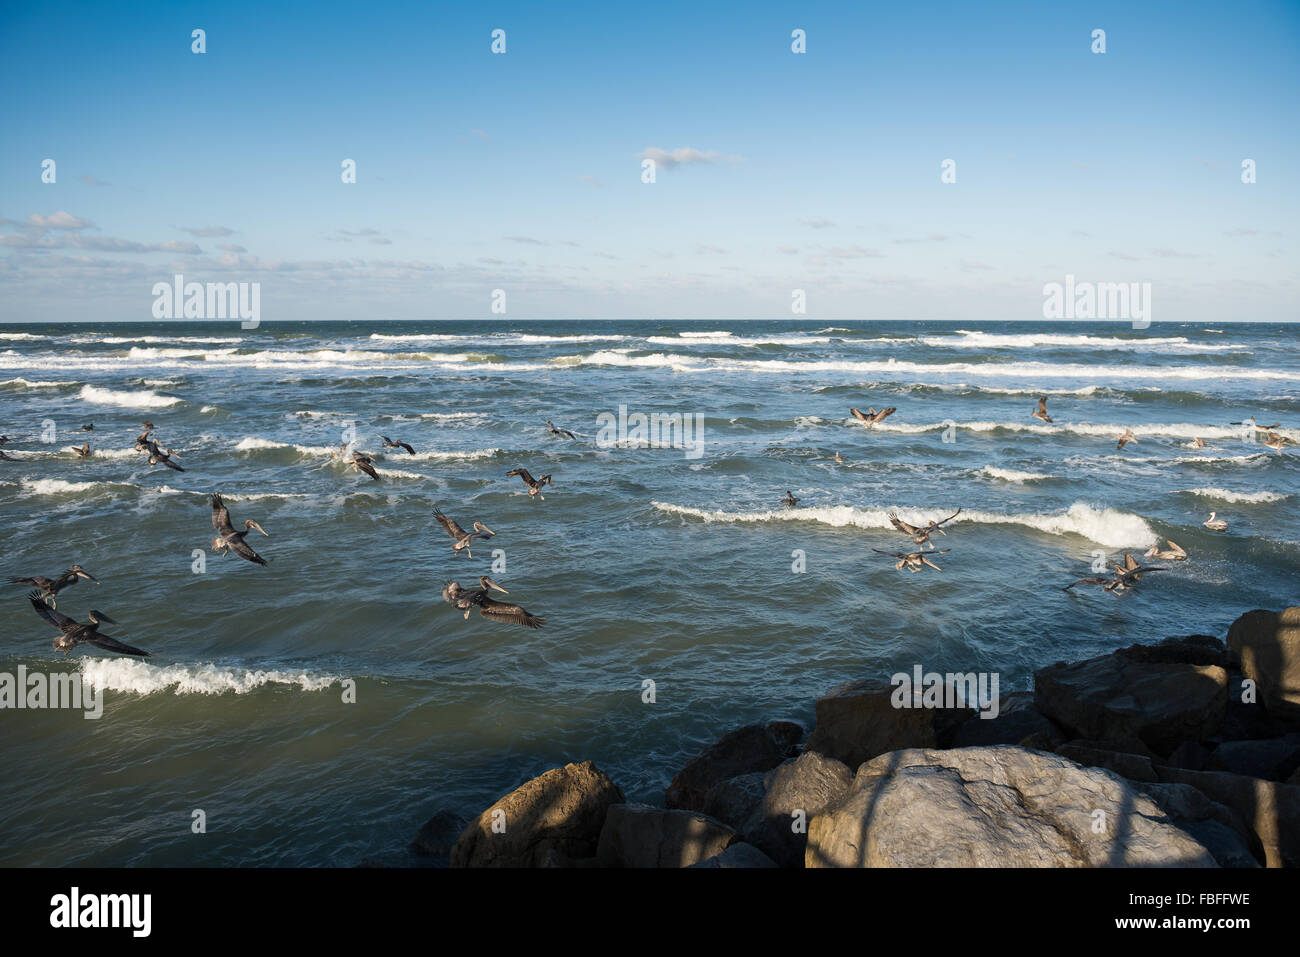 Rebaño de pelícanos marrones aterrizando en las olas del Océano Atlántico cerca del embarcadero de piedra en Ponce Inlet Lighthouse Point Park, Daytona Beach, Florida, Estados Unidos. Foto de stock